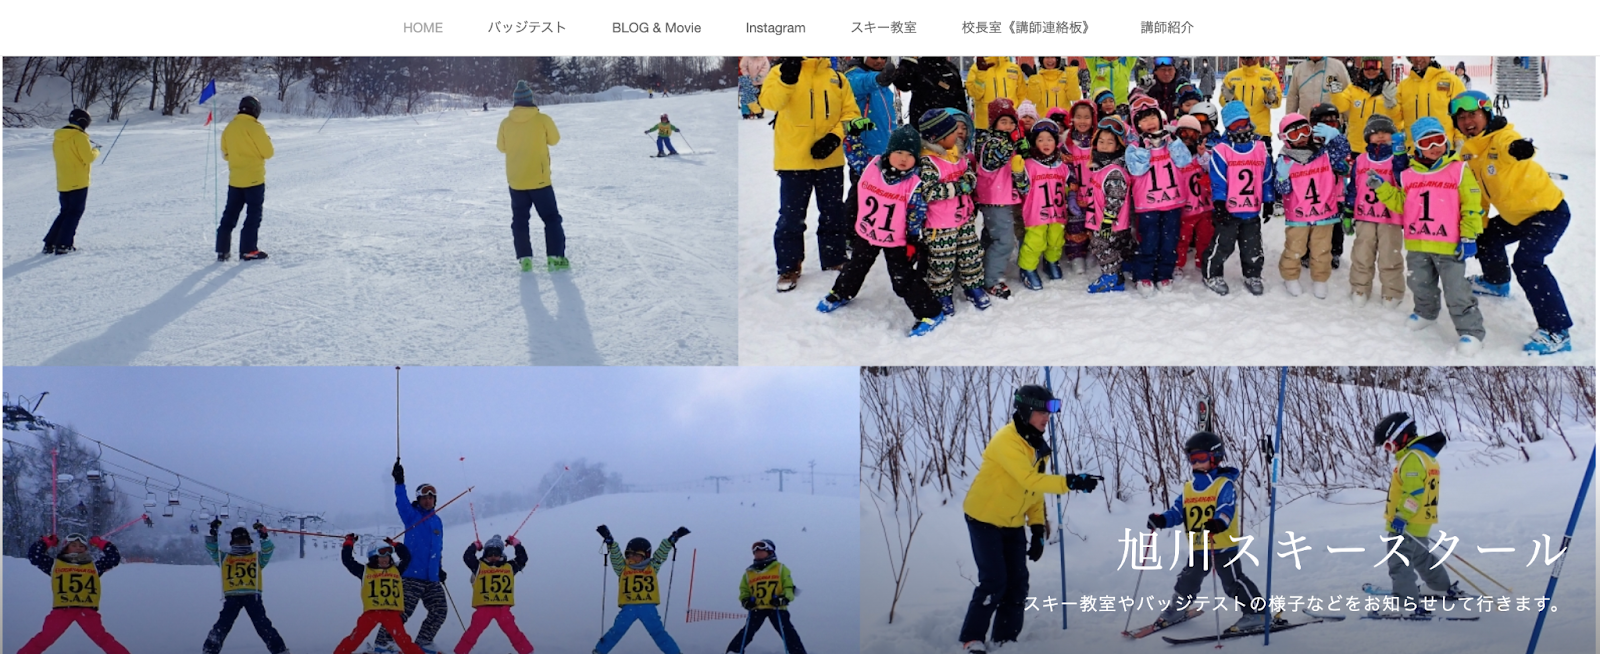 5.楽しみながら上達「旭川スキースクール」